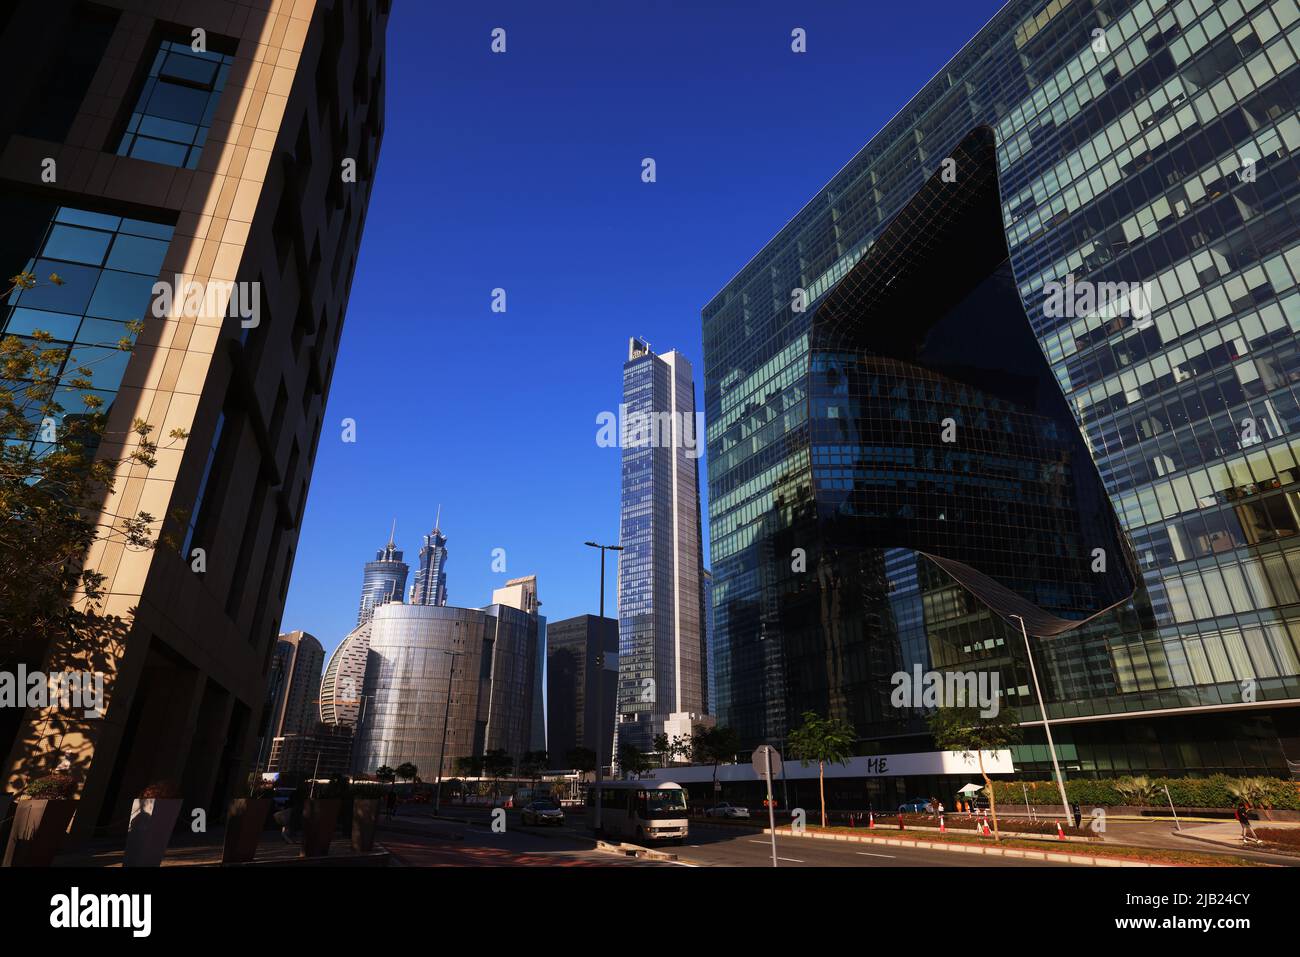 Zaha Hadid, Dubai, Opus, ME Hotel, Modernes Design und moderne Architektur am Skyscraper in der Business Bay a Dubai Luxushotel aus Glas und Stahl Foto Stock